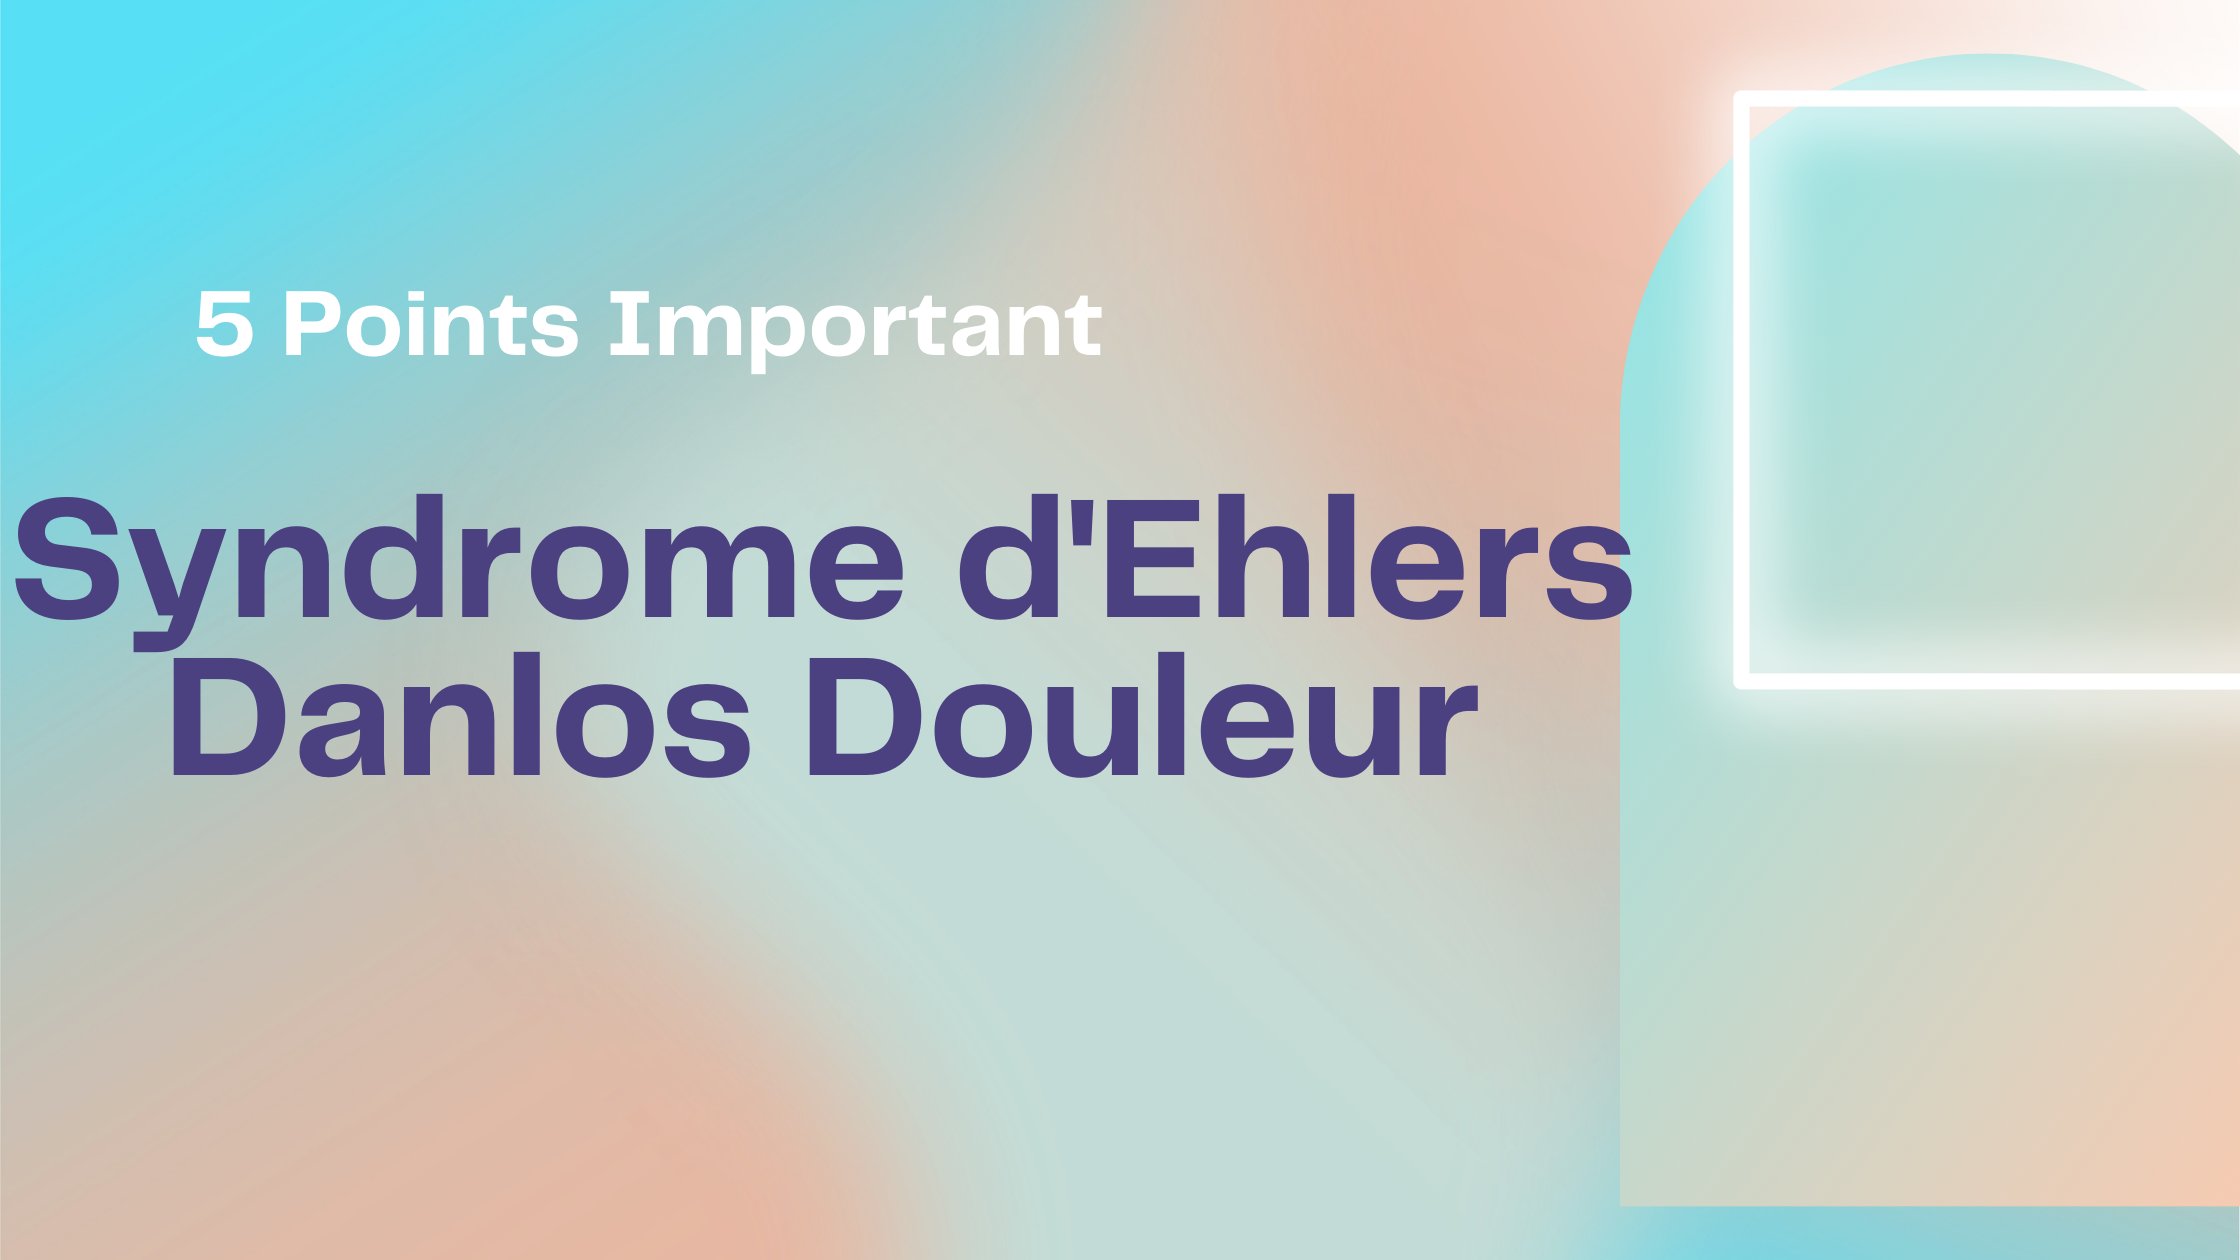 Syndrome d'Ehlers Danlos Douleur | 5 Points Important